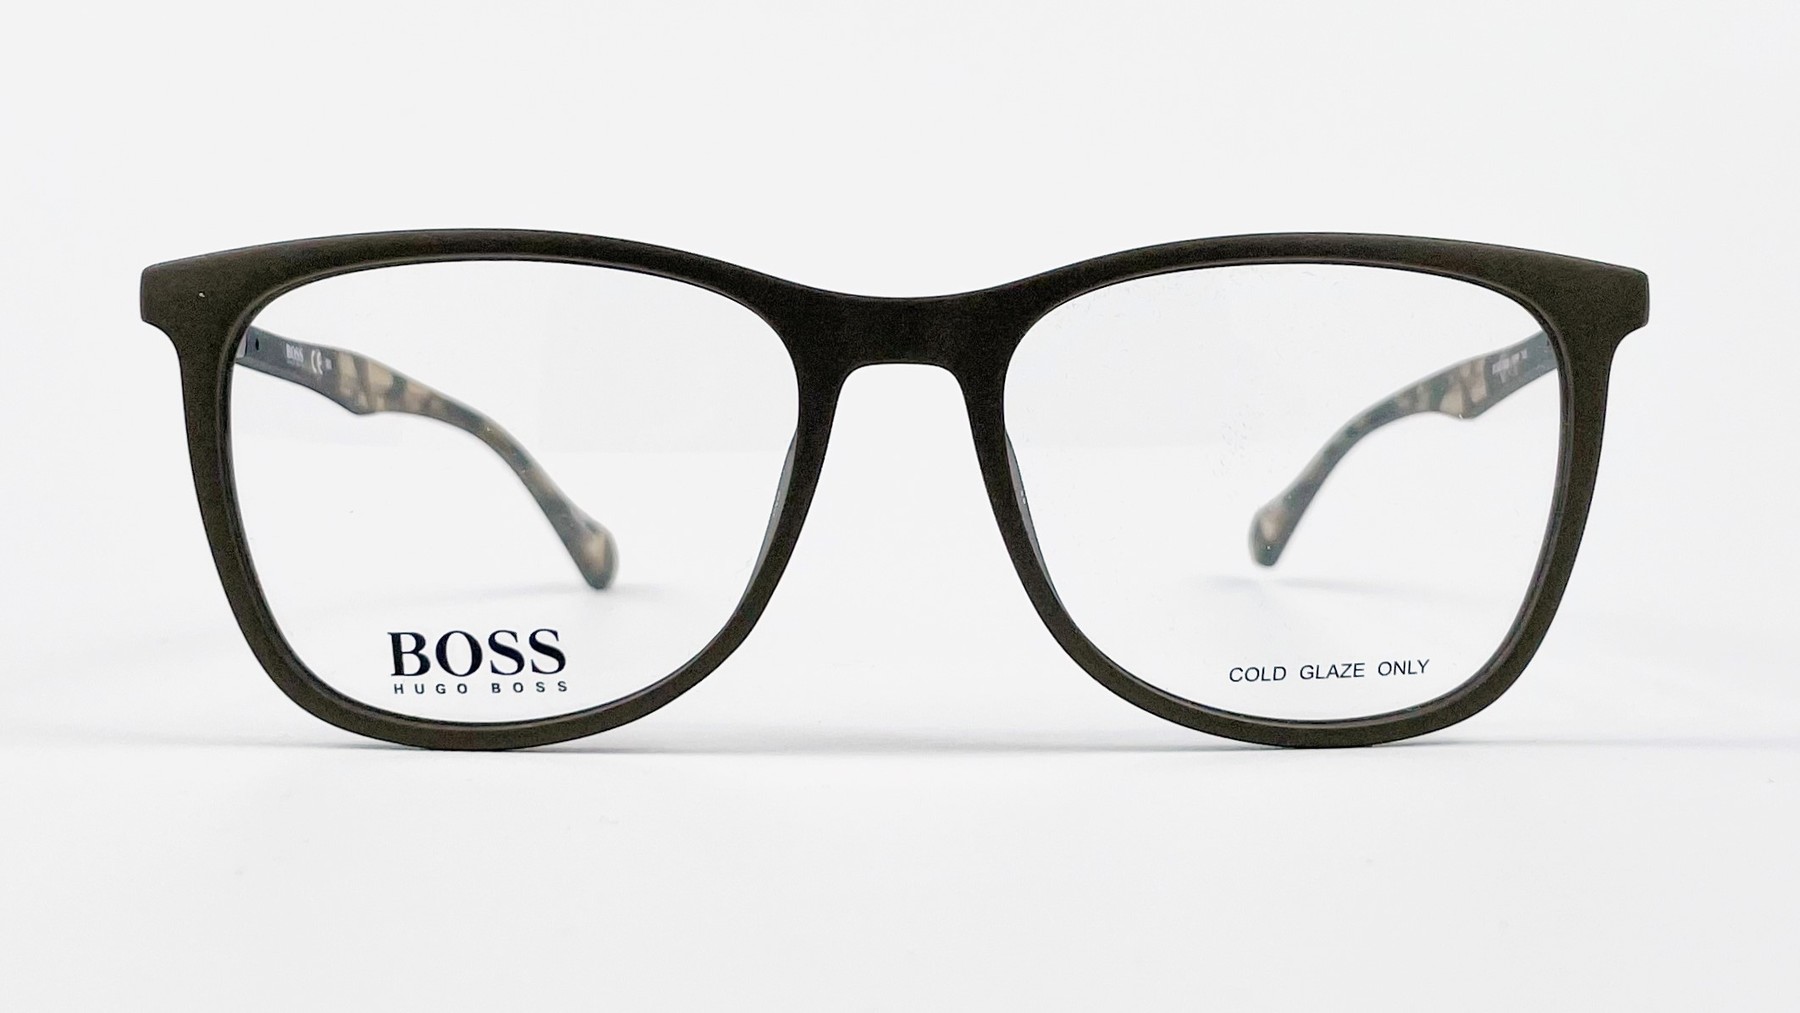 HUGO BOSS 0825 YWP, Korean glasses, sunglasses, eyeglasses, glasses